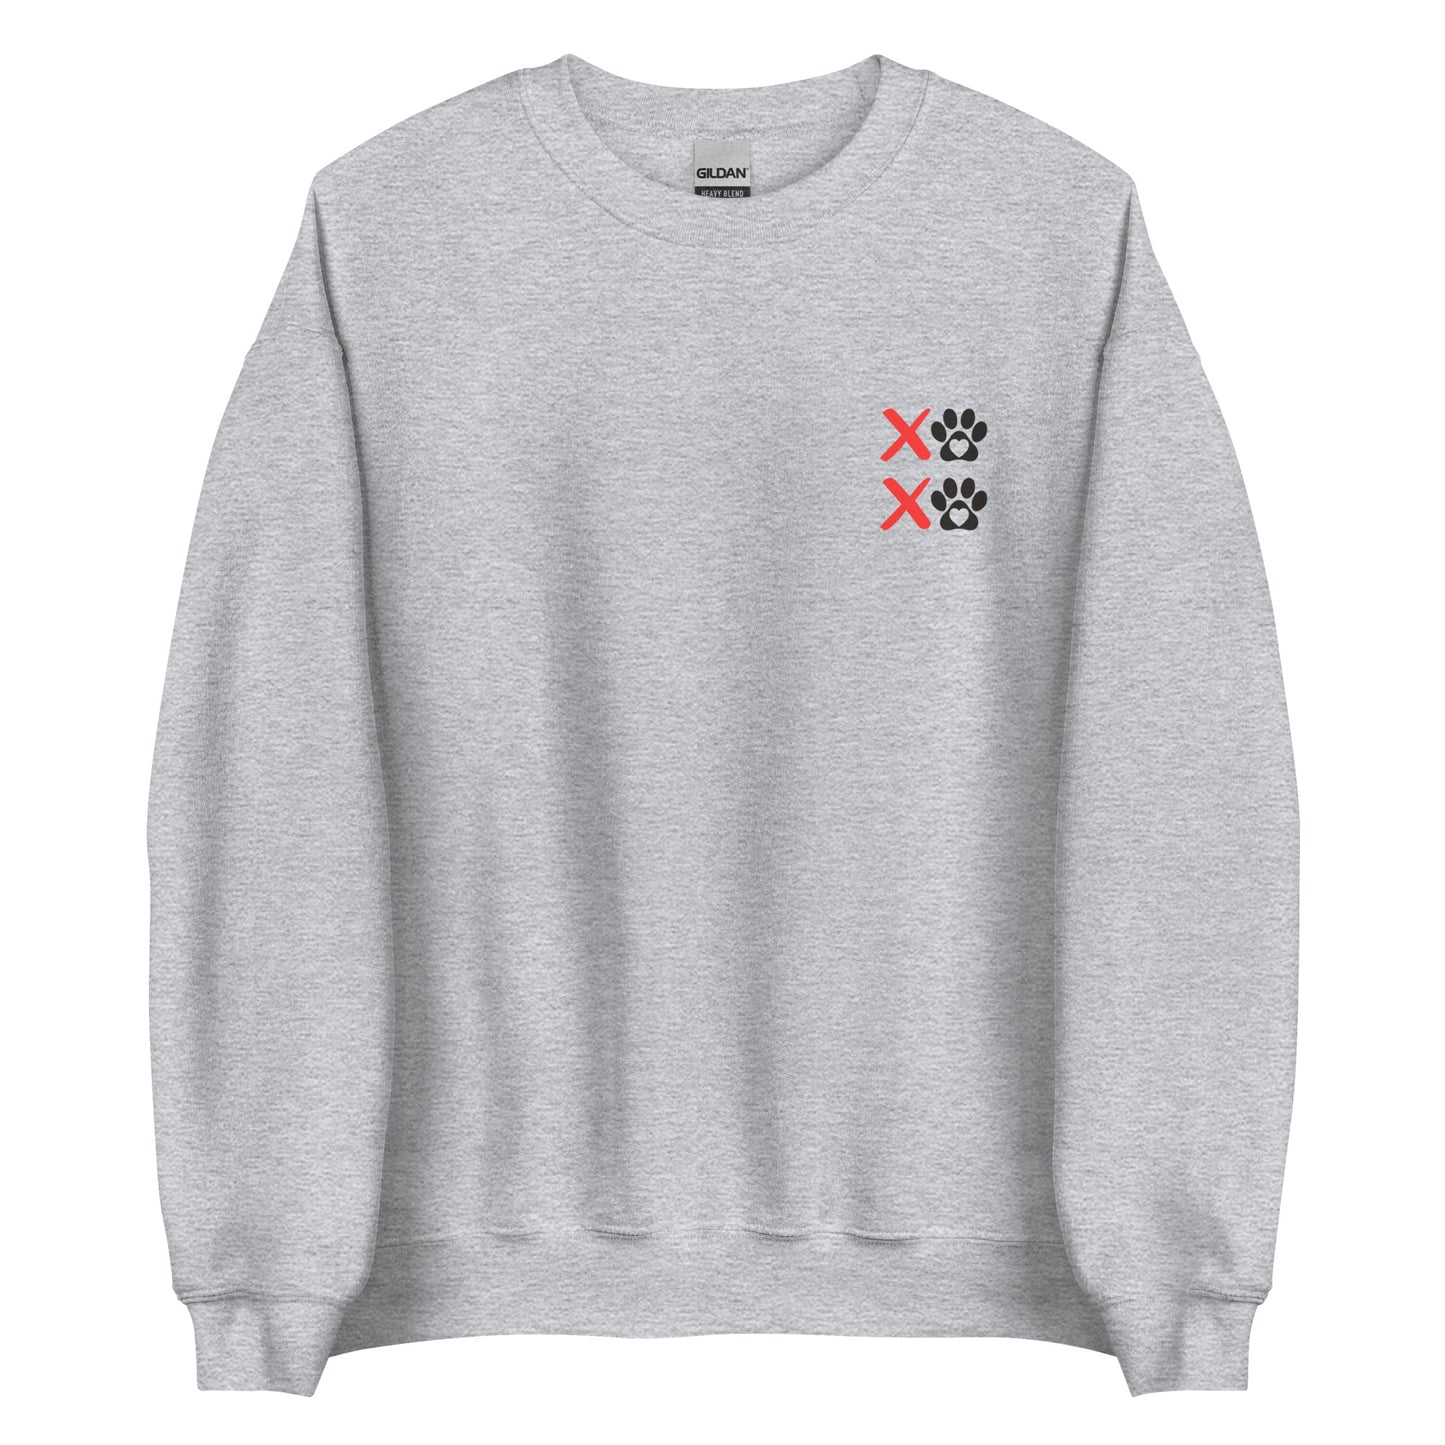 Unleashed Life XOXO Block Sweatshirt